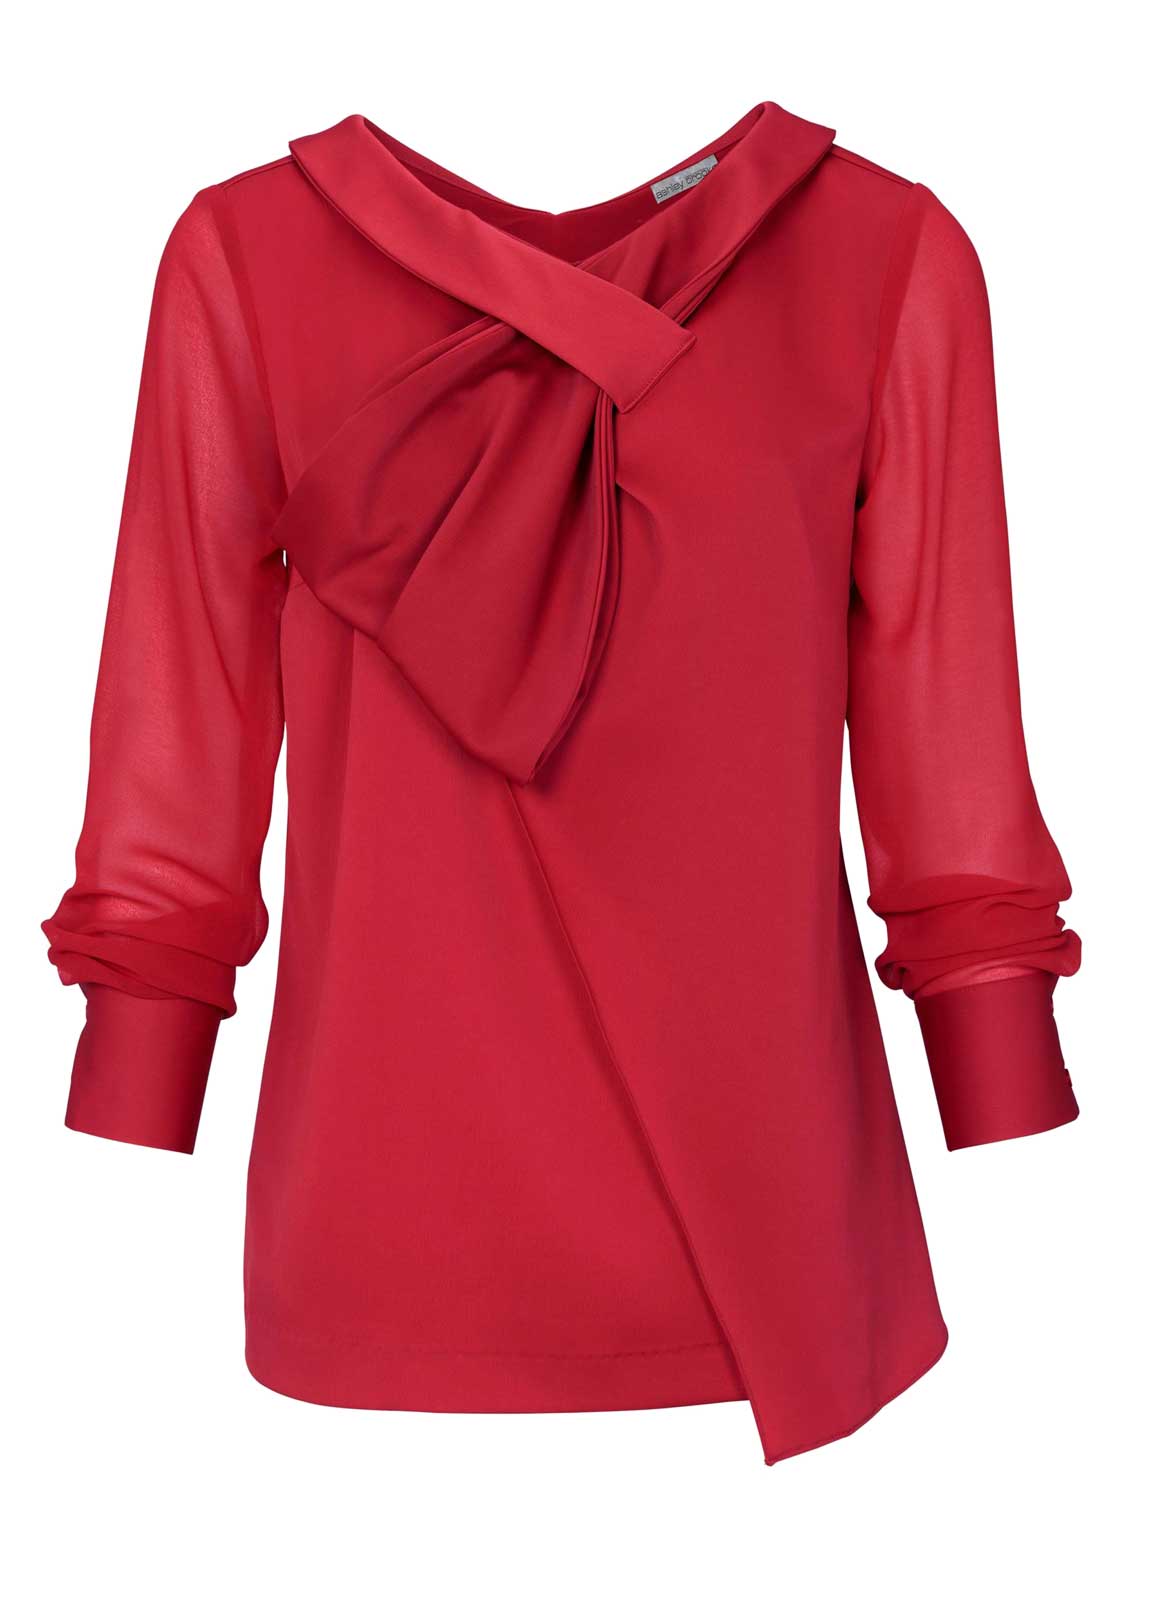 Ashley Brooke Damen Designer-Bluse, rot